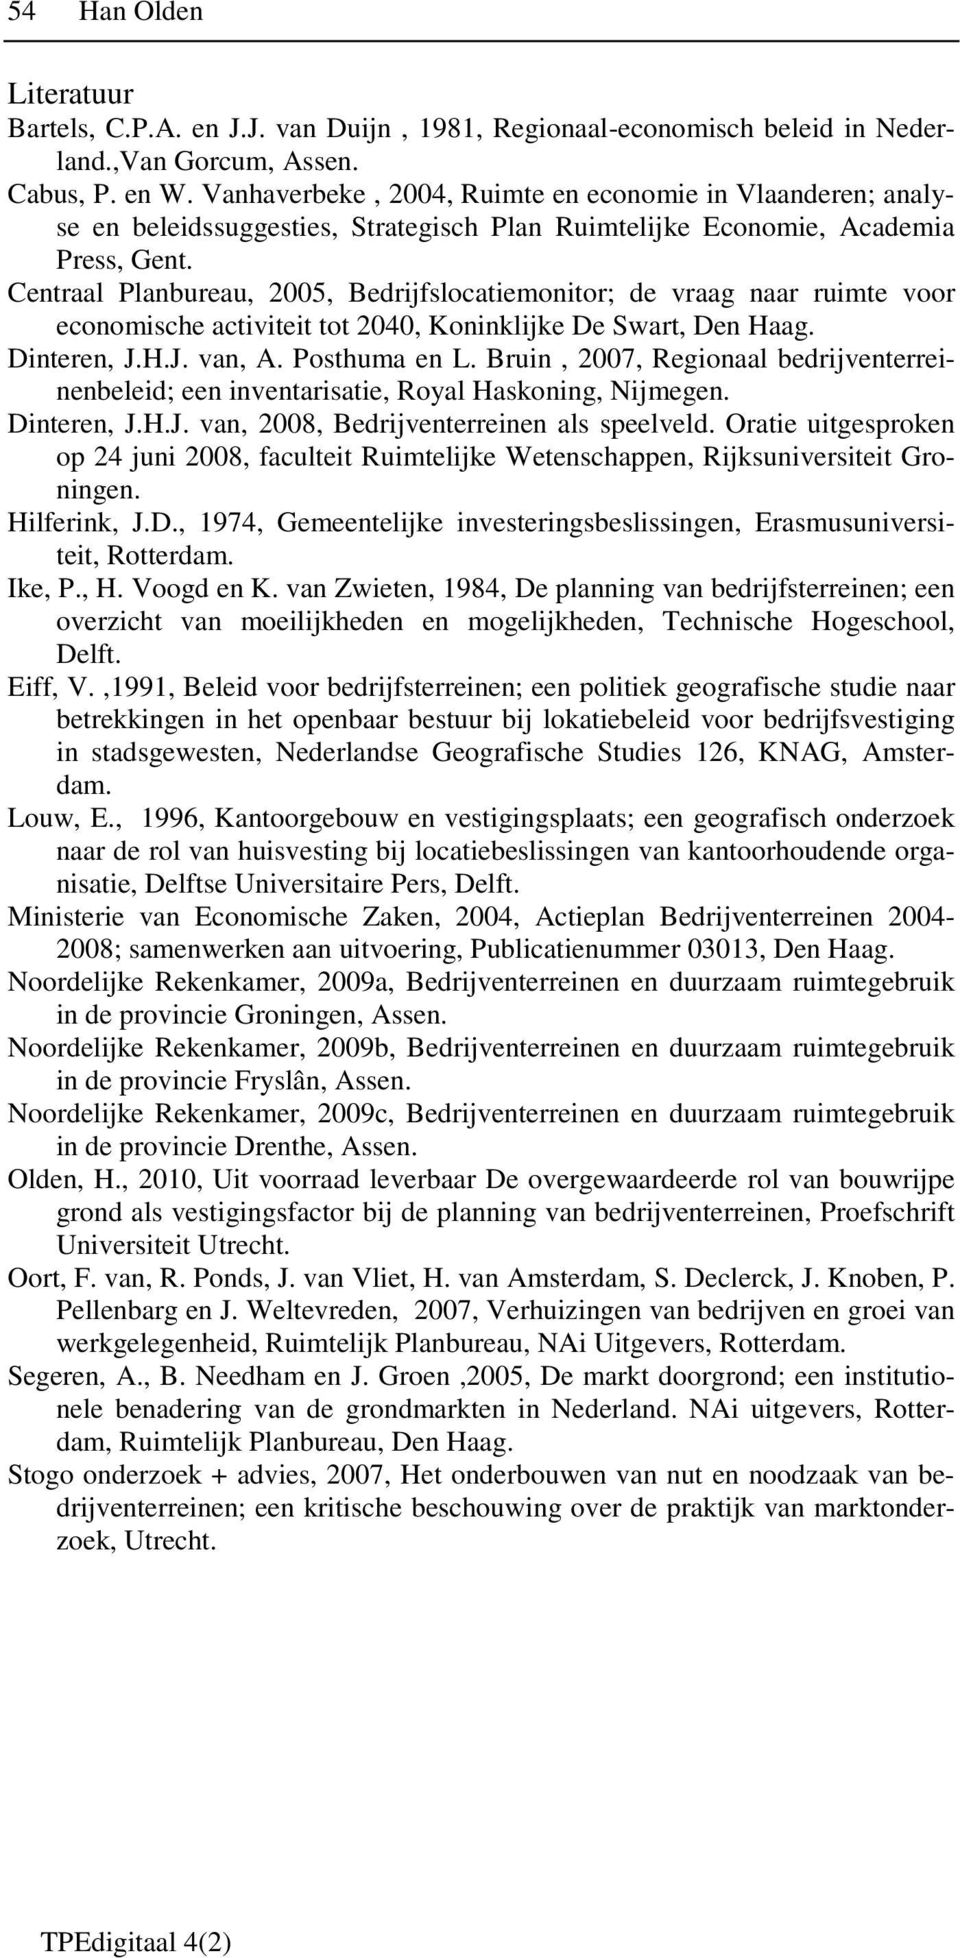 Centraal Planbureau, 2005, Bedrijfslocatiemonitor; de vraag naar ruimte voor economische activiteit tot 2040, Koninklijke De Swart, Den Haag. Dinteren, J.H.J. van, A. Posthuma en L.